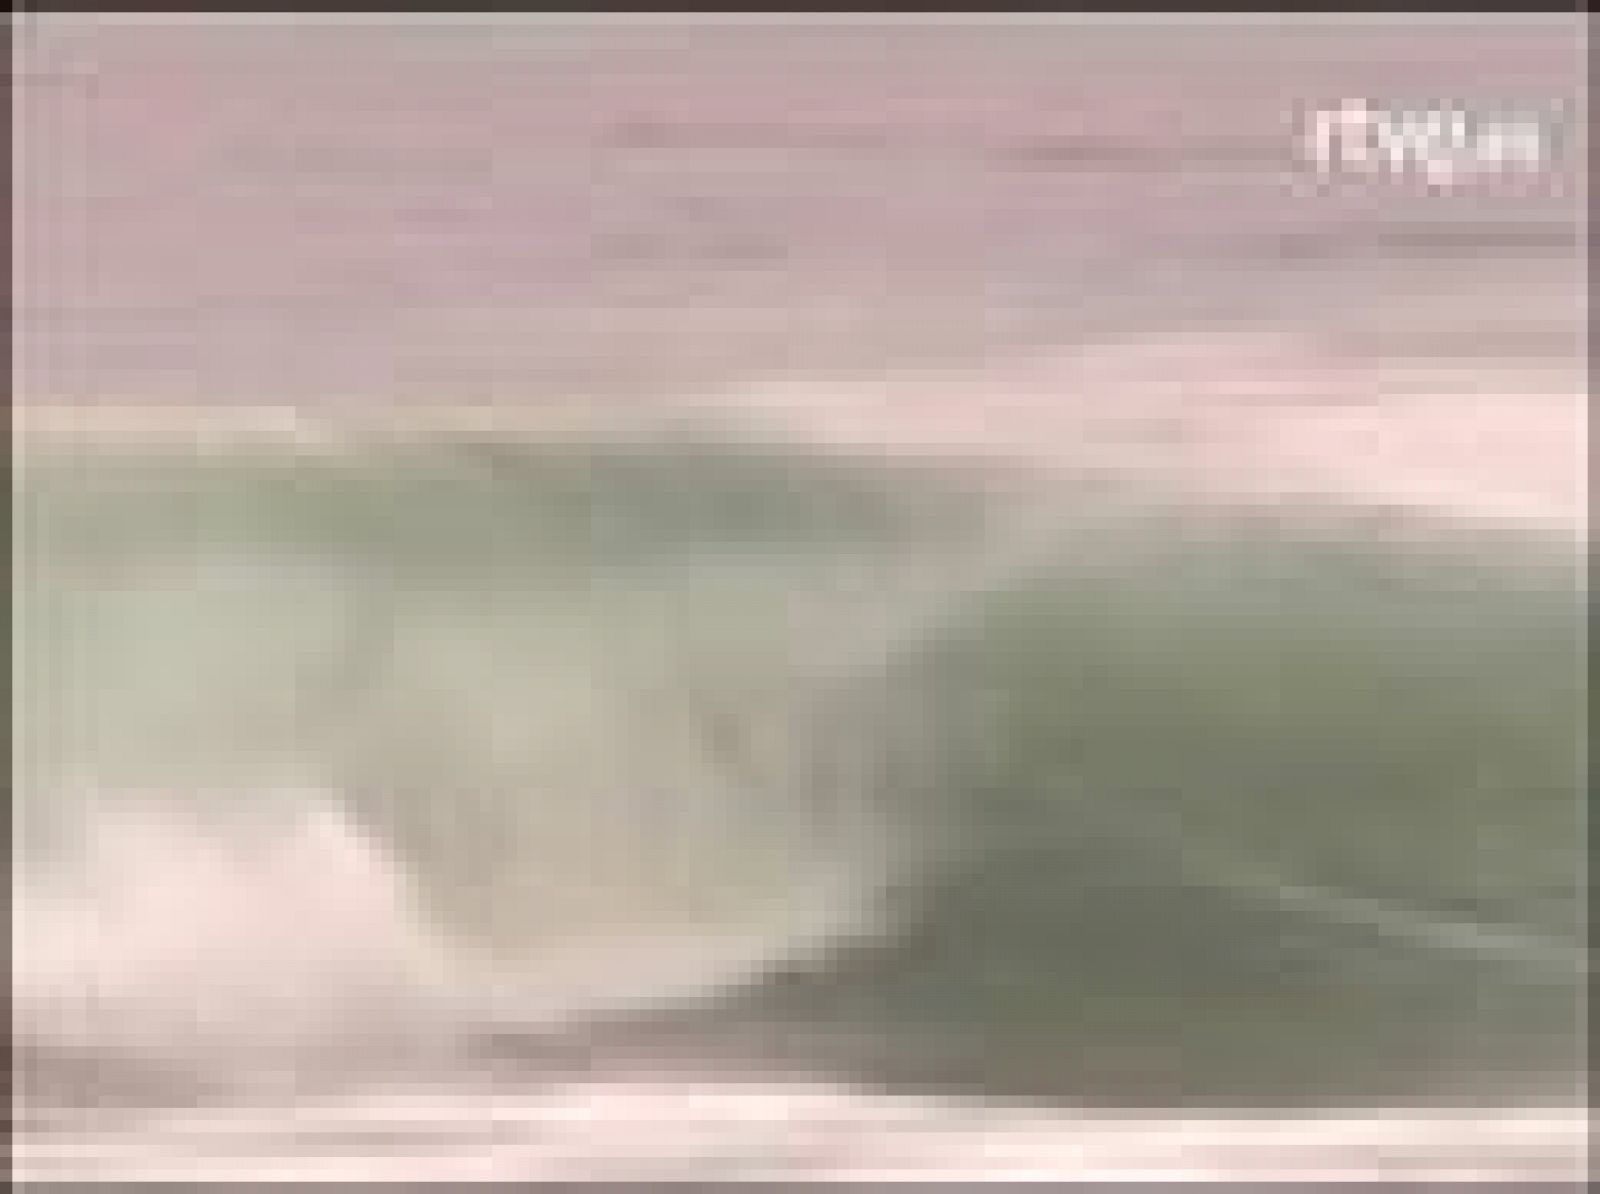 La famosa ola izquierda de Mundaka, en Vizcaya, donde se disputa una de las pruebas del circuito mundial de surf.